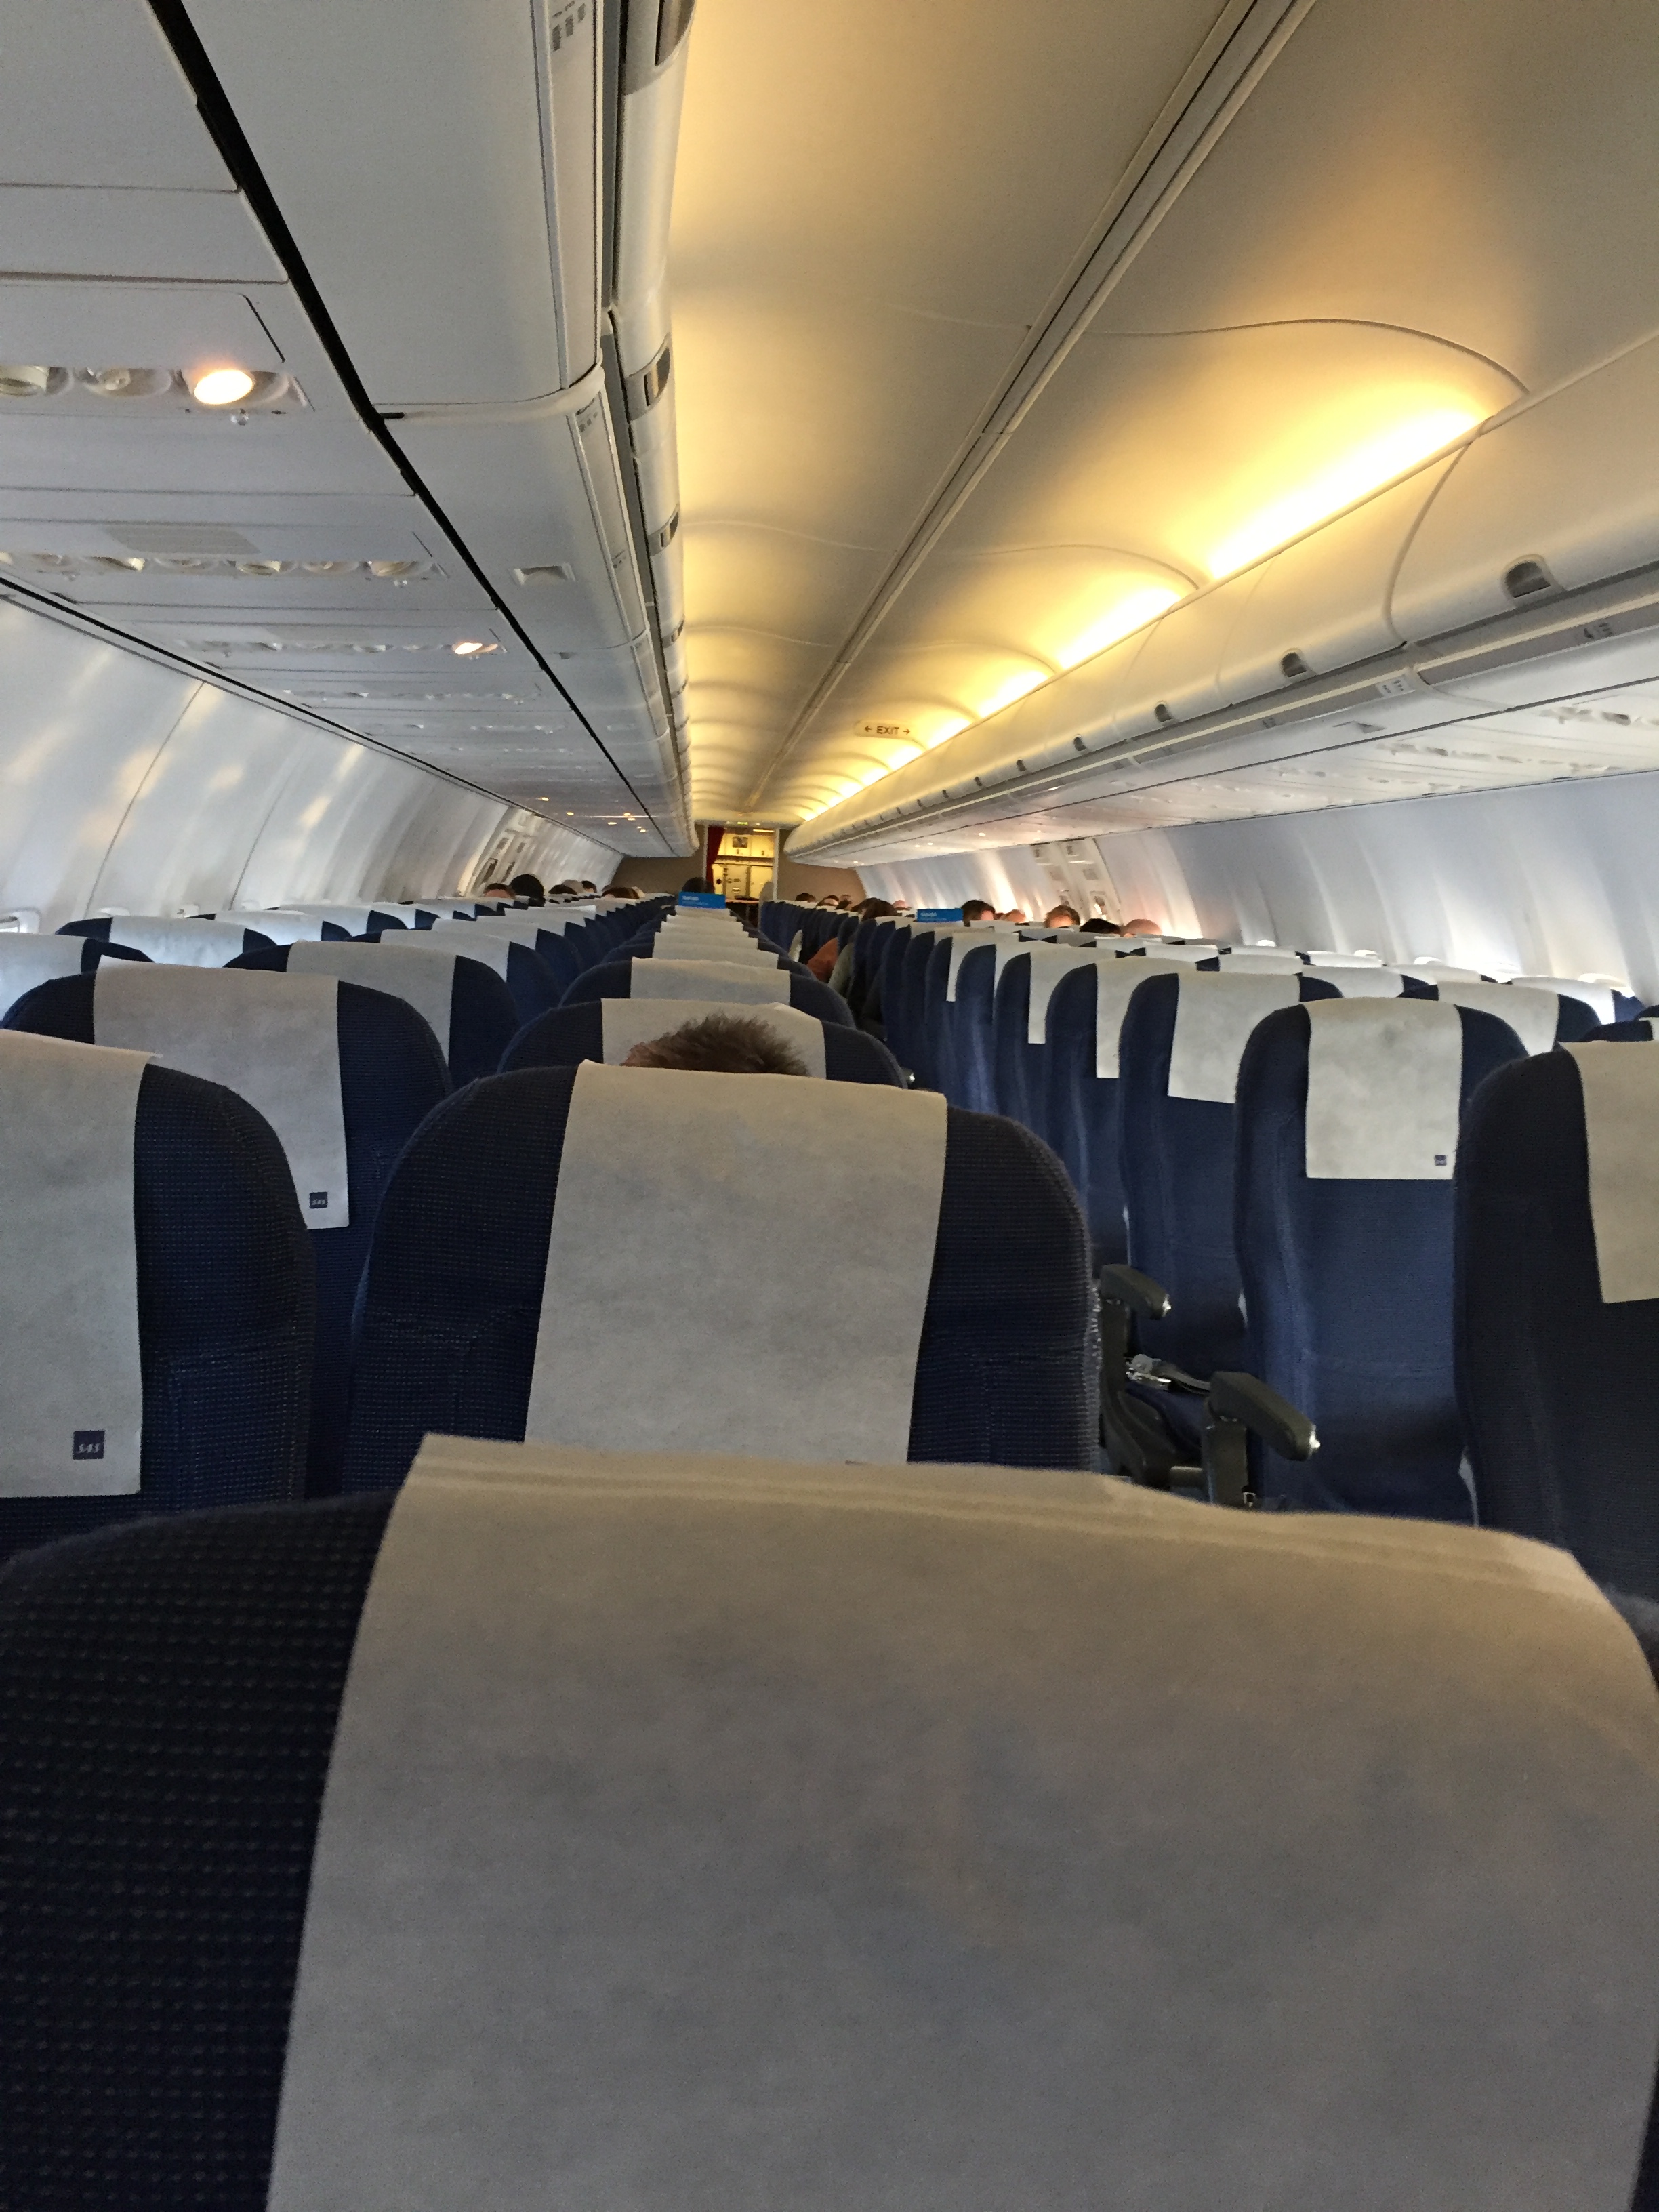 SAS flight almost empty